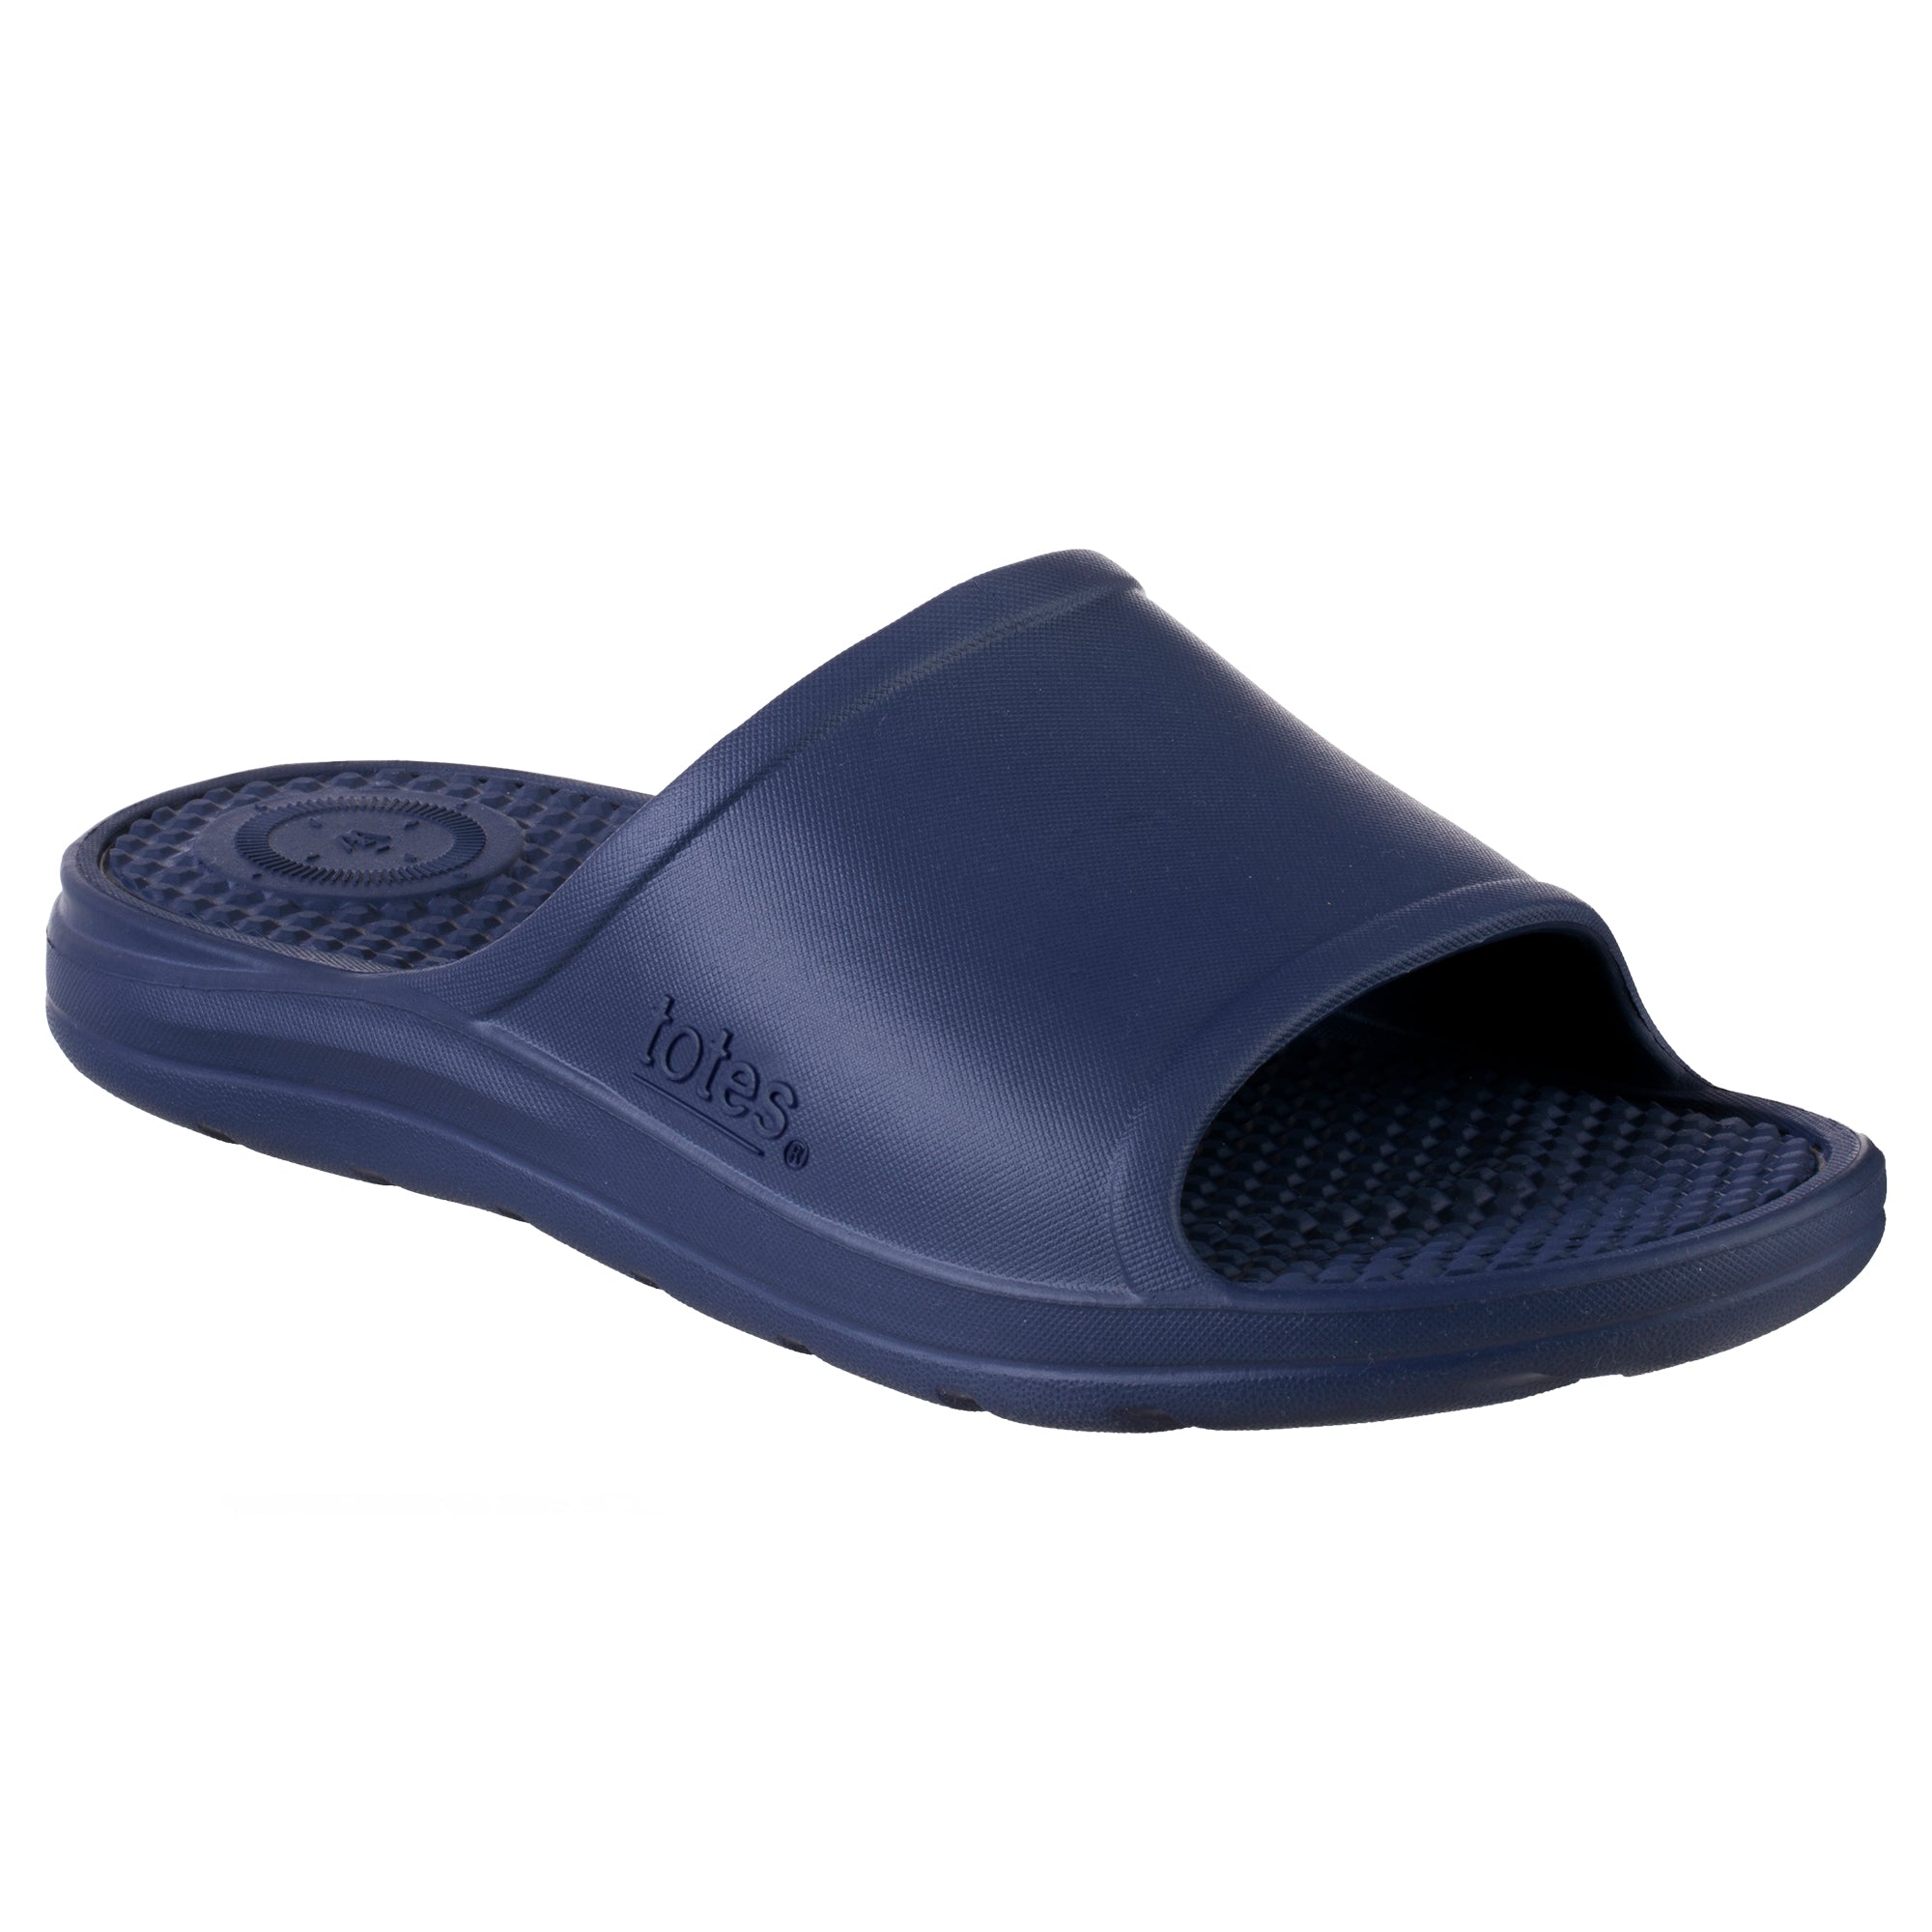 Totes Everywear Ara Men's Sports Slide - Men's Slide Sandals – Totes ...